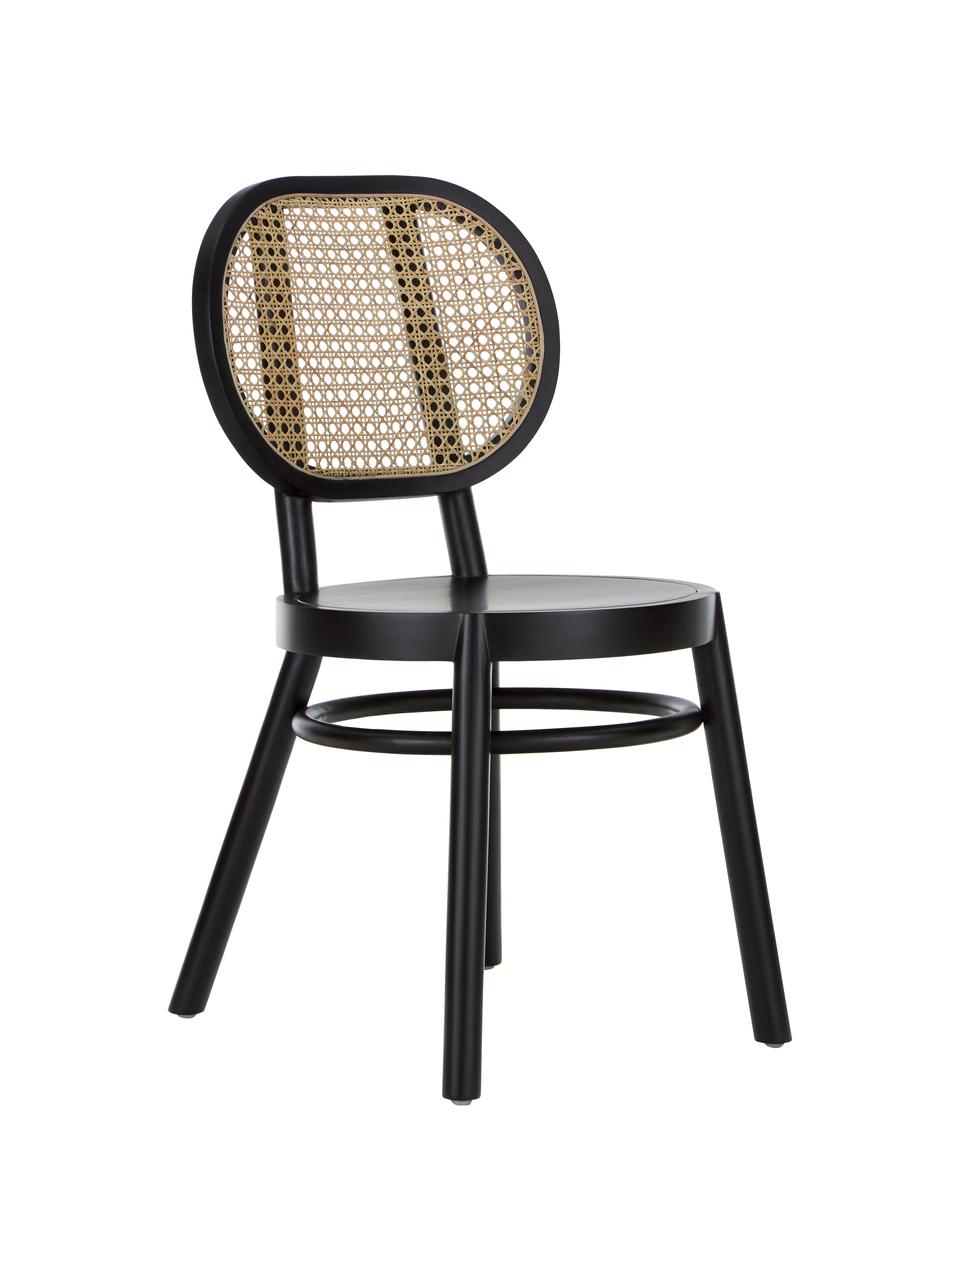 Houten stoel Retro met Weens vlechtwerk, Zwart, B 45 x D 54 cm